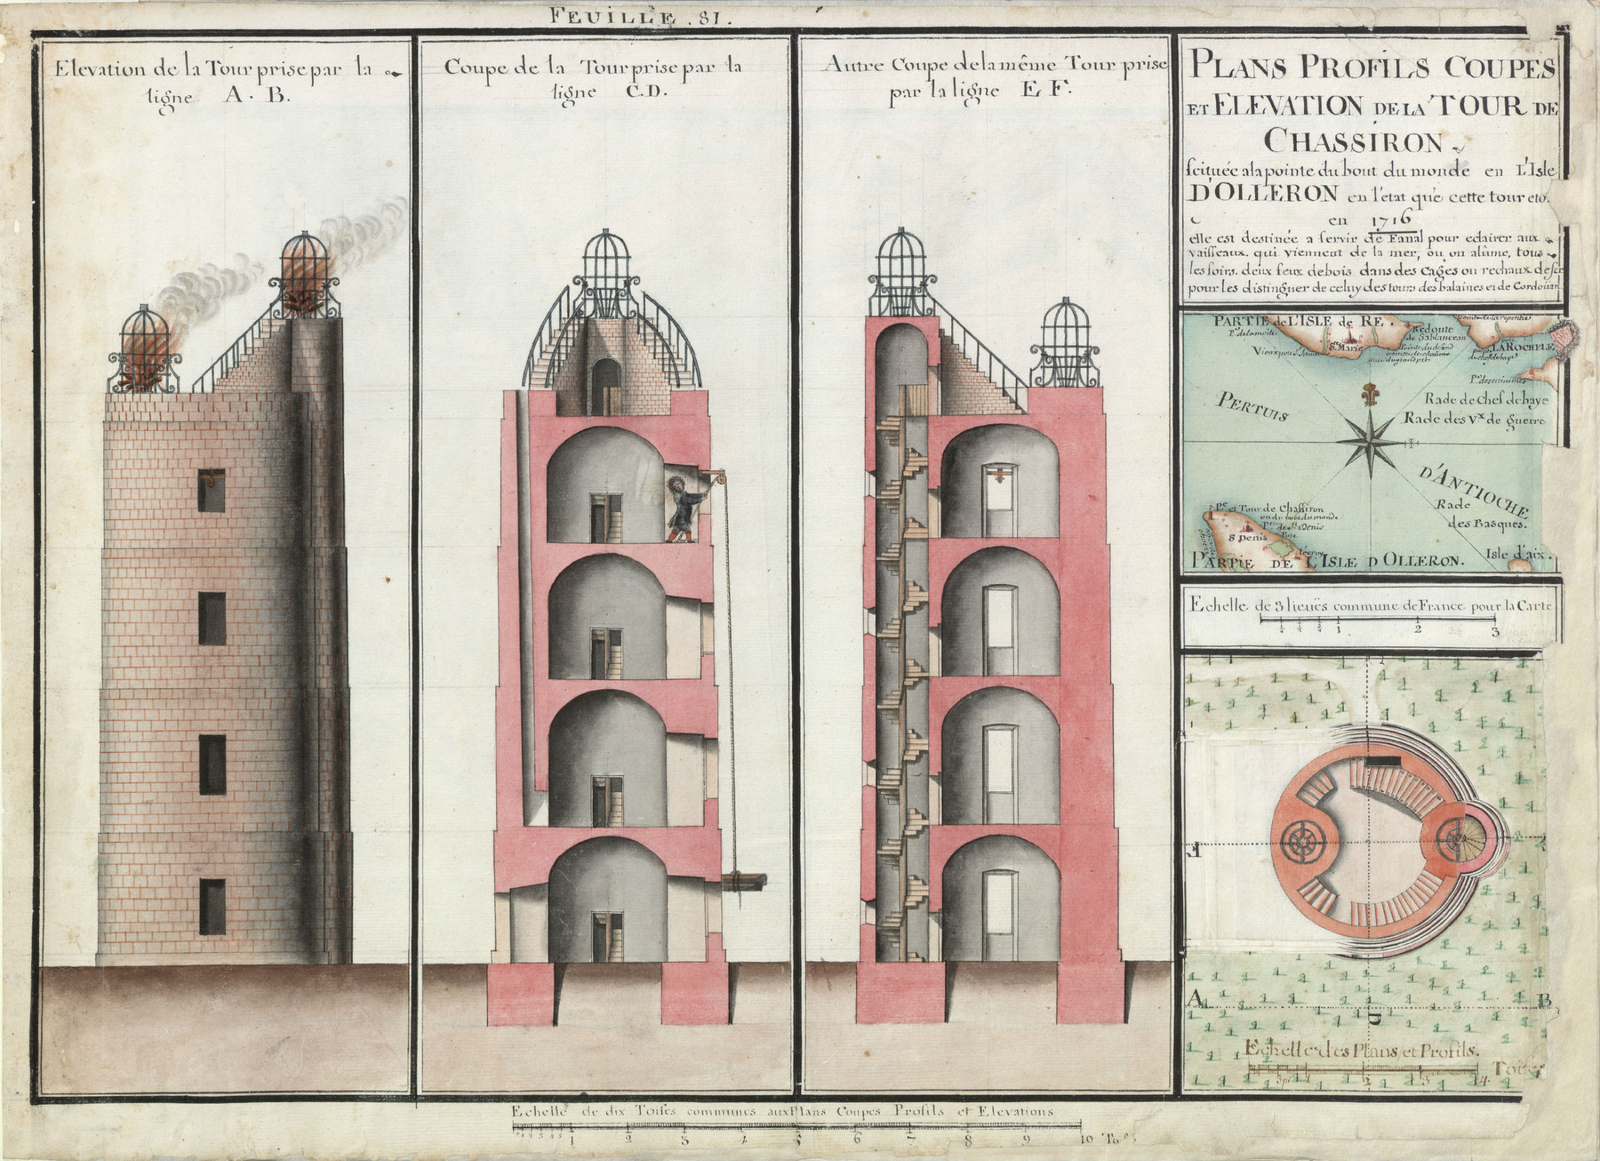 Plan, profils, coupes et élévation de la tour de Chassiron, 1716